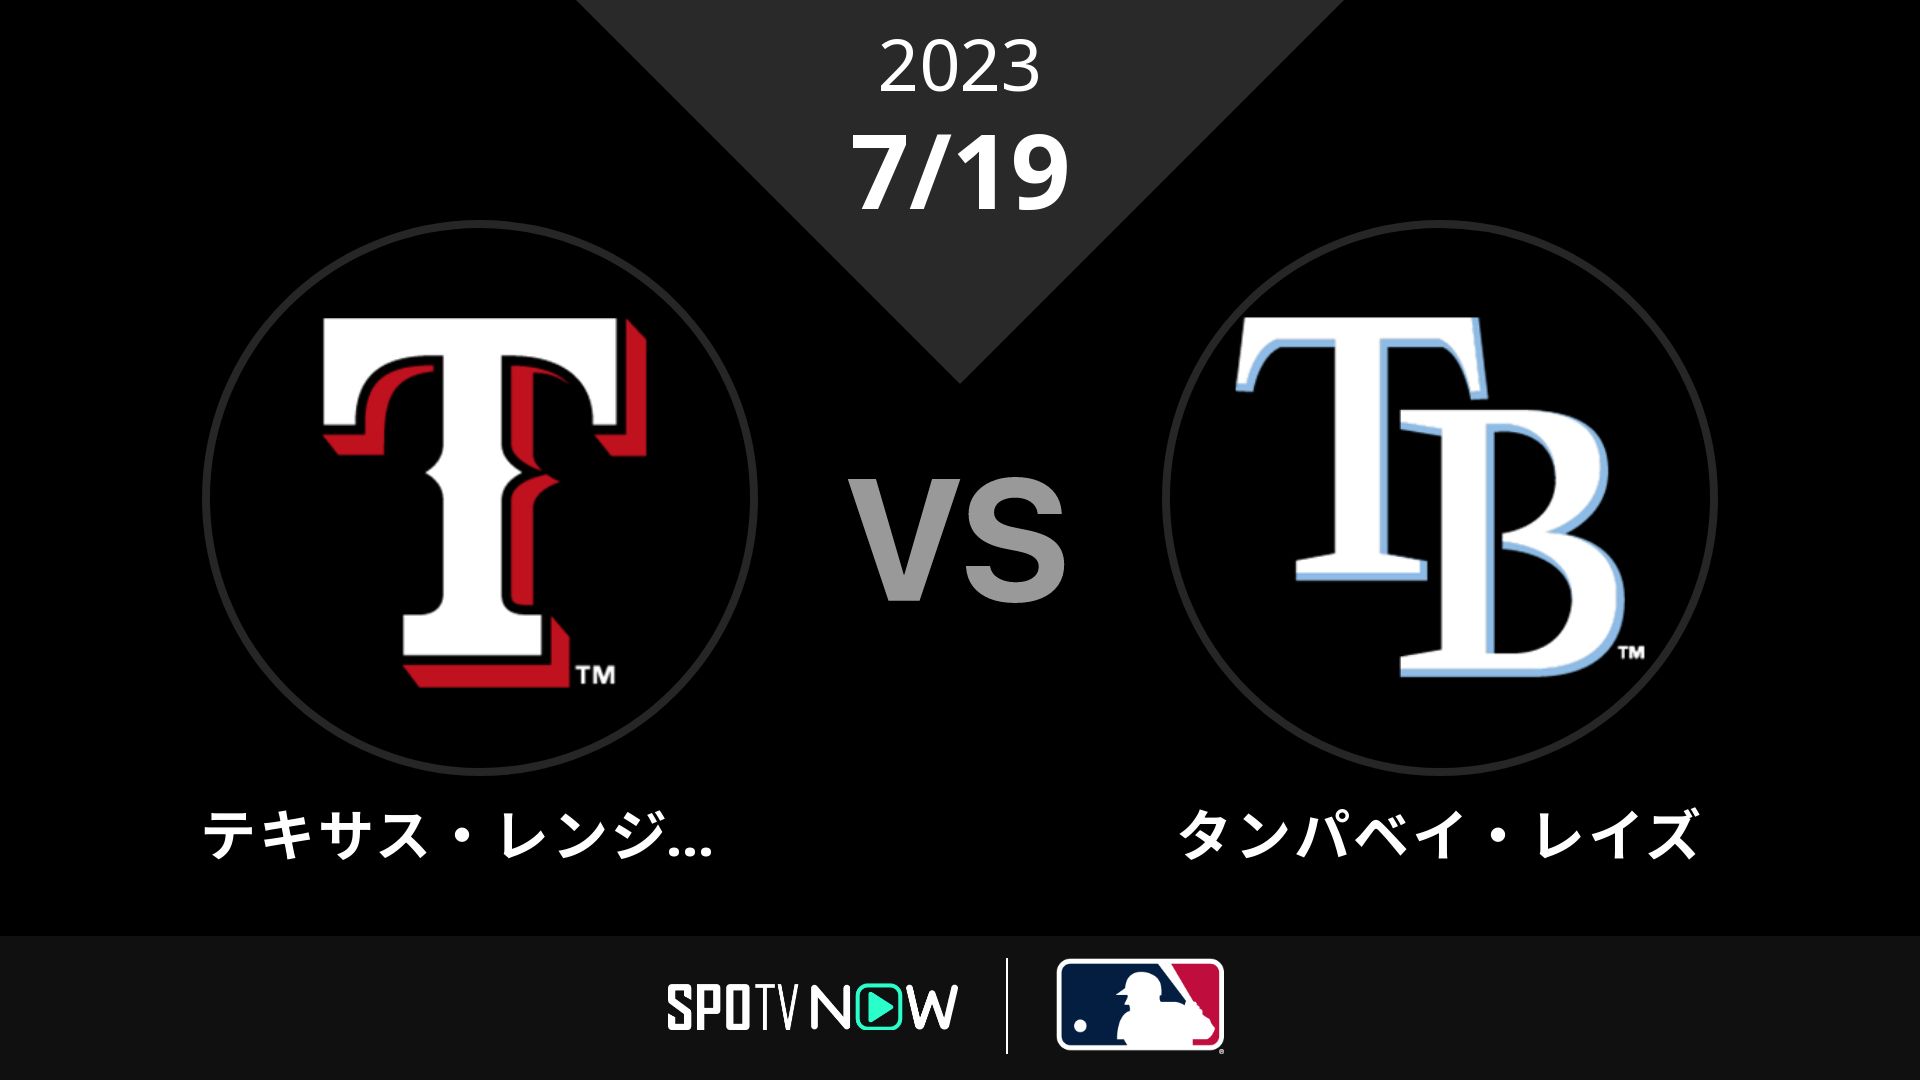 2023/7/19 レンジャーズ vs レイズ [MLB]